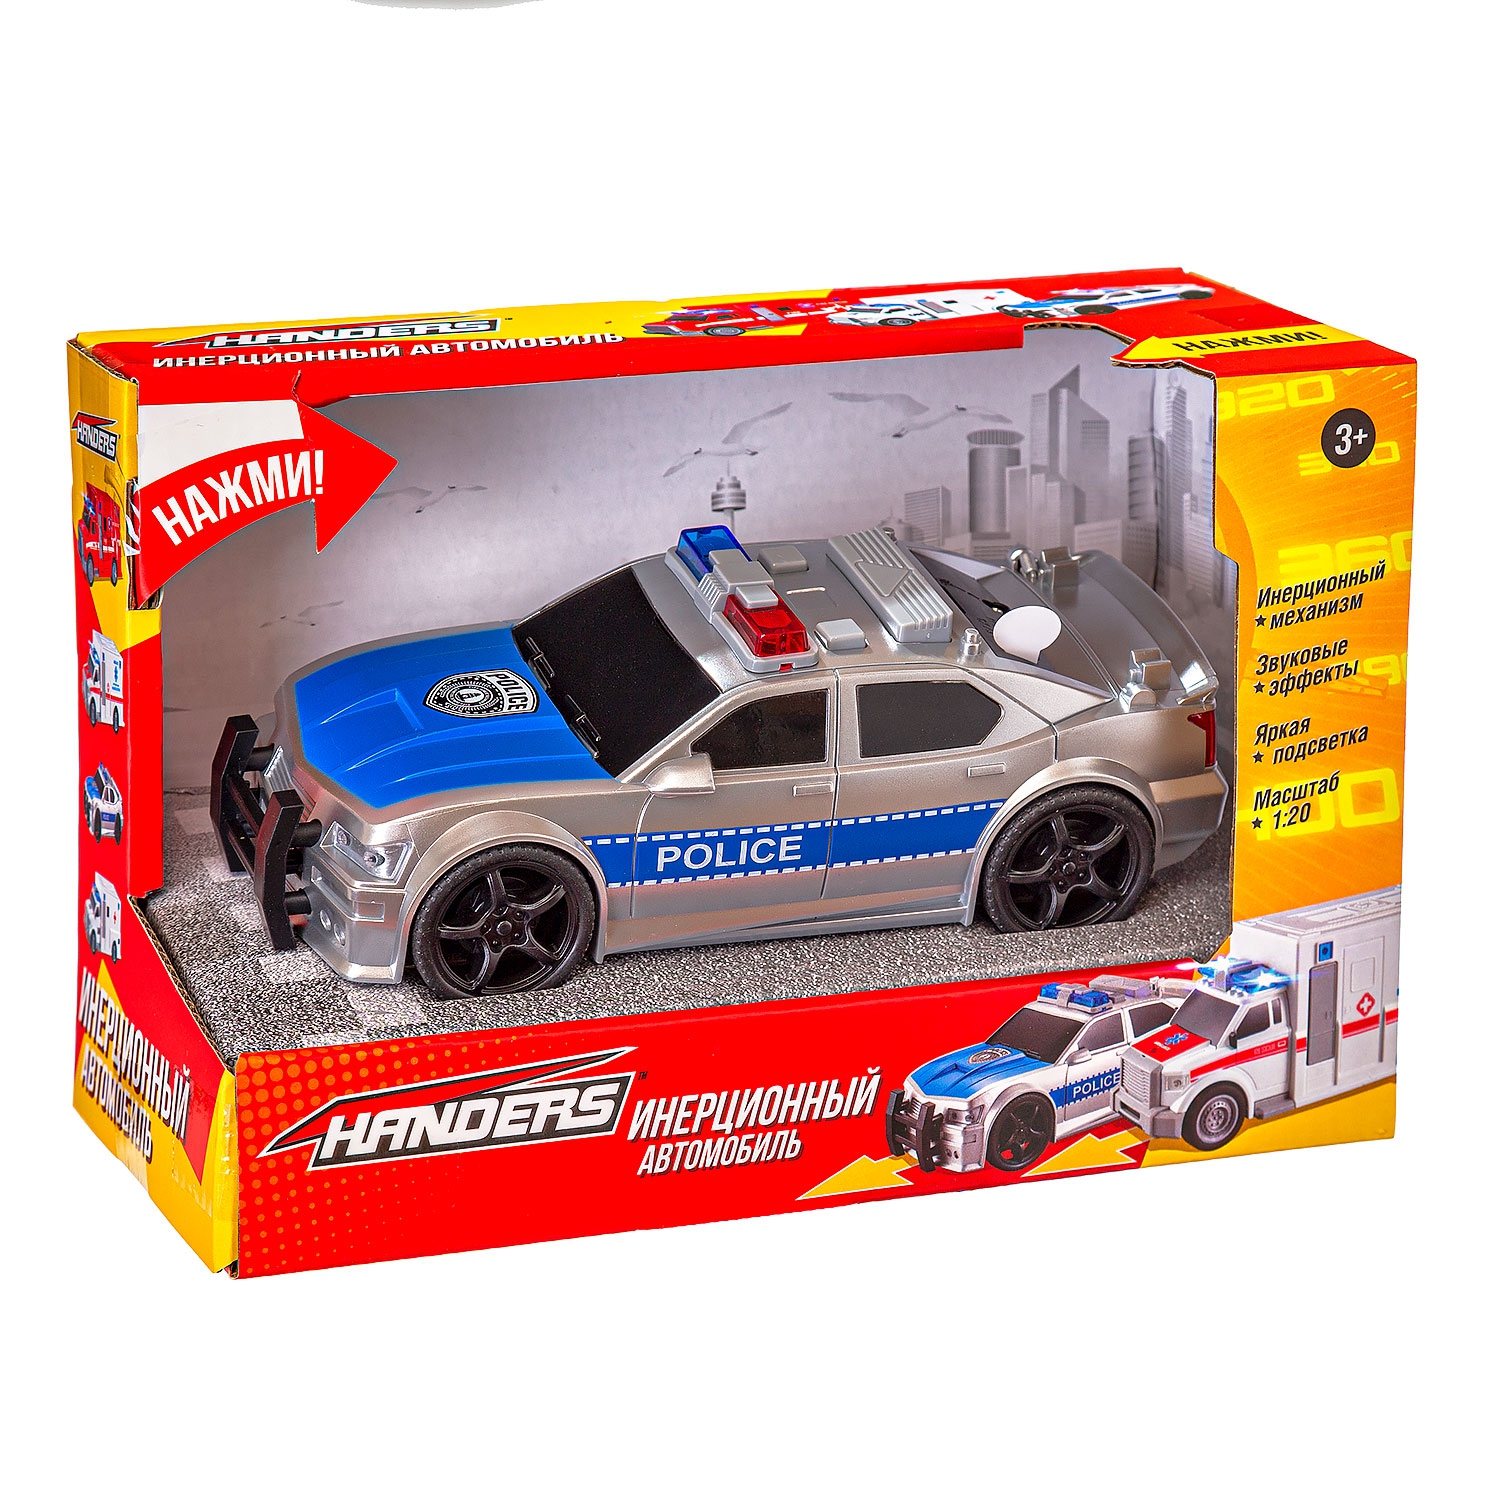 Инерционная игрушка Handers Полицейский автомобиль (18,5 см, 1:20, свет, звук) (Вид 2)